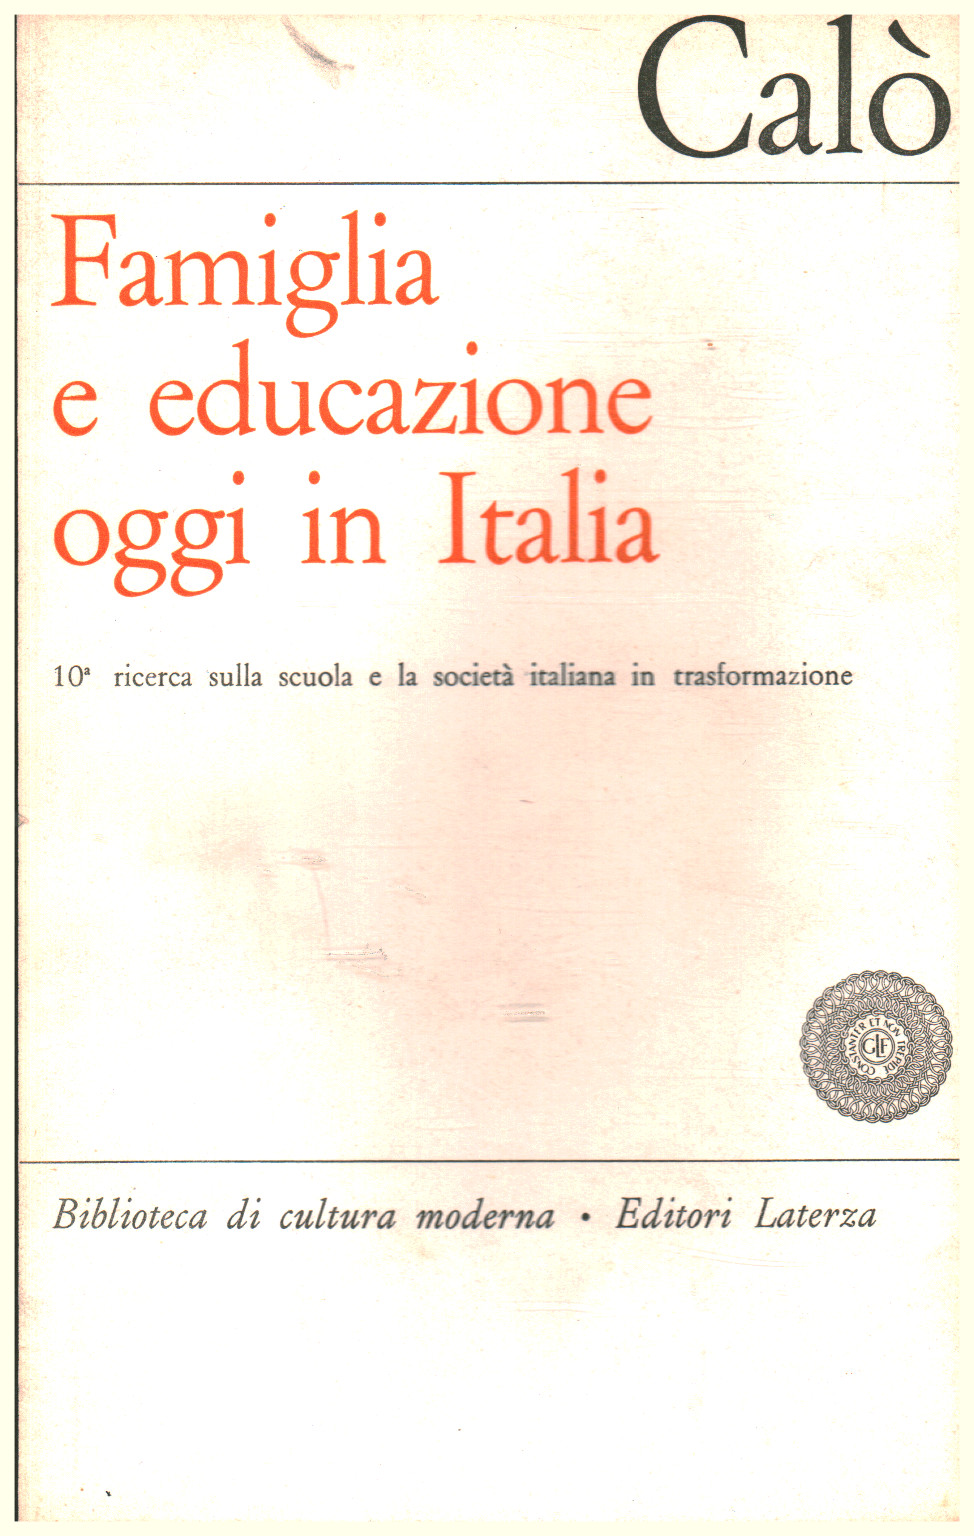 Famiglia e educazione oggi in Italia, Giovanni Calò